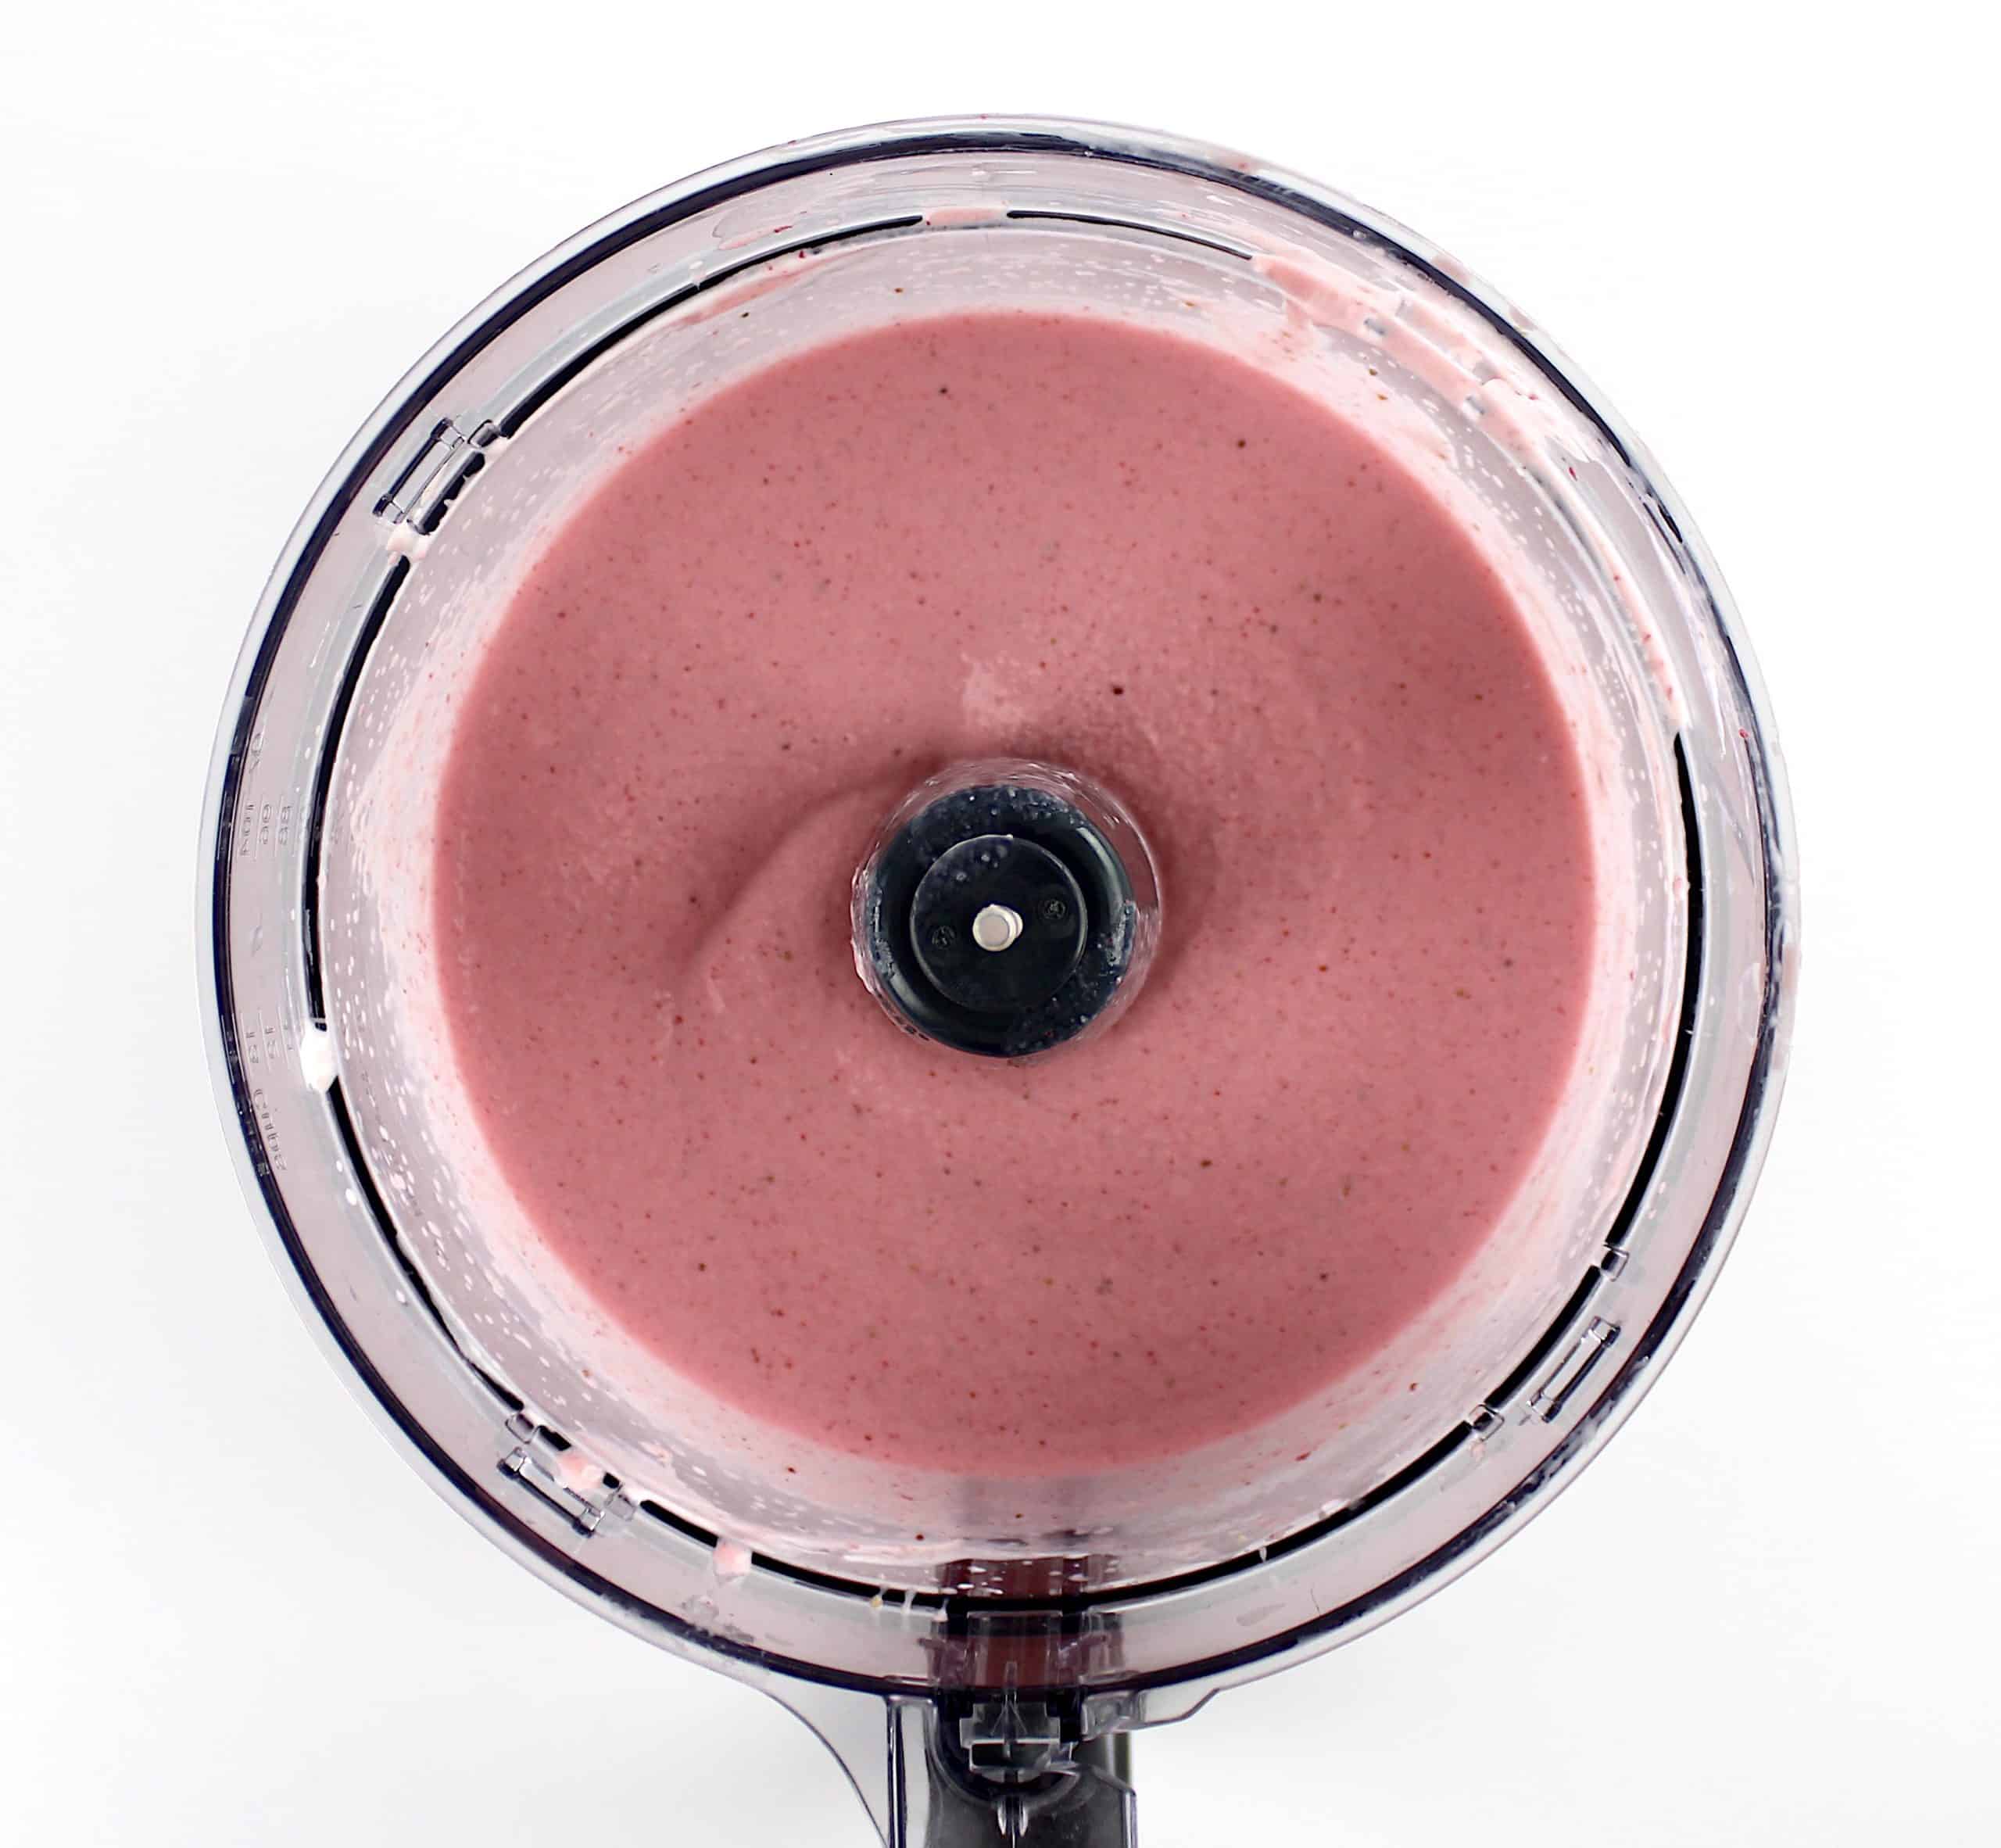 Keto Strawberry Frozen Yogurt blended in food processor